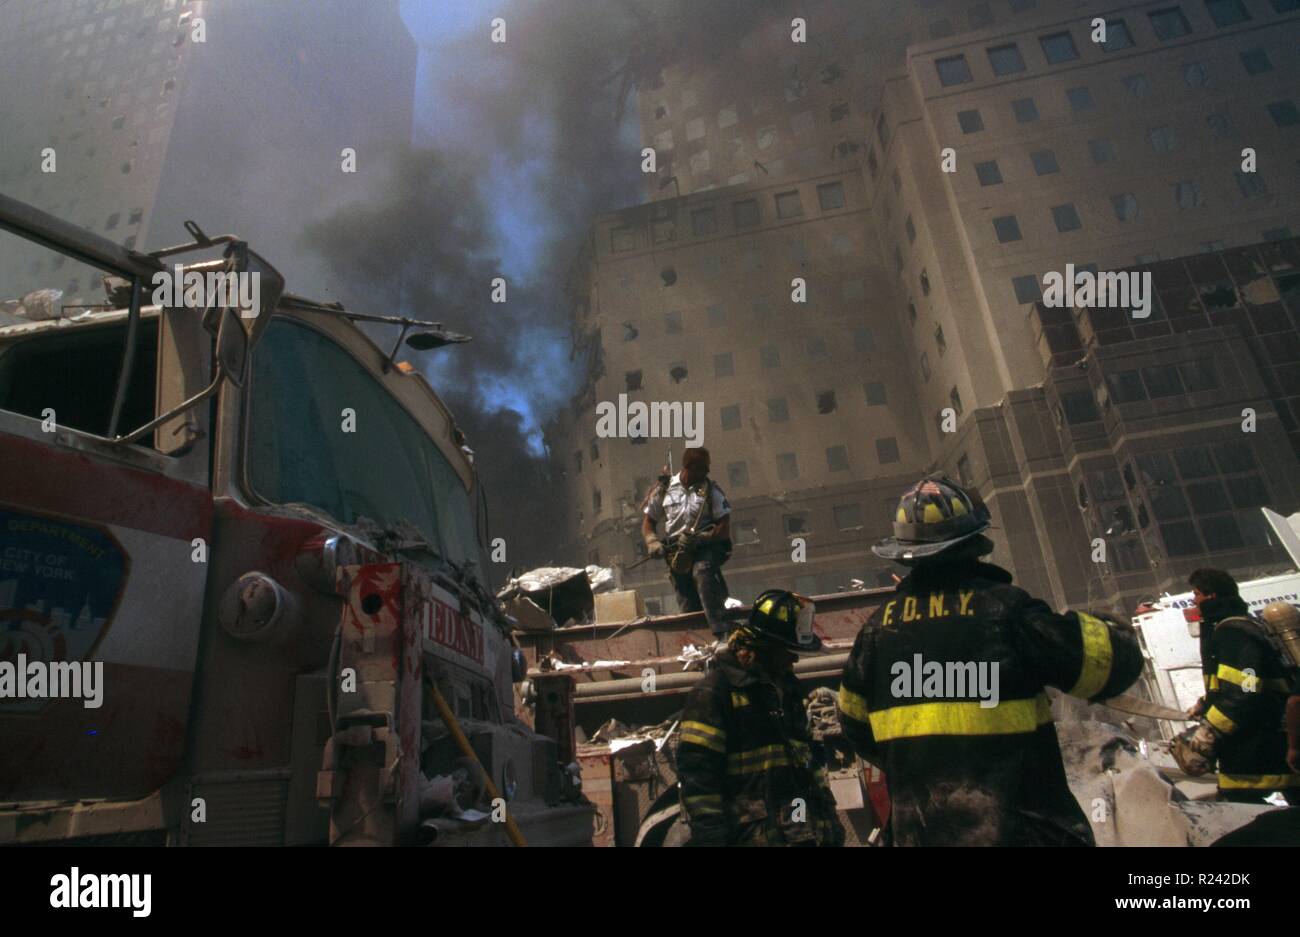 Une photographie couleur de New York Fire-fighter au milieu des décombres du World Trade Center après les attaques du 11 septembre. Datée 2001 Banque D'Images